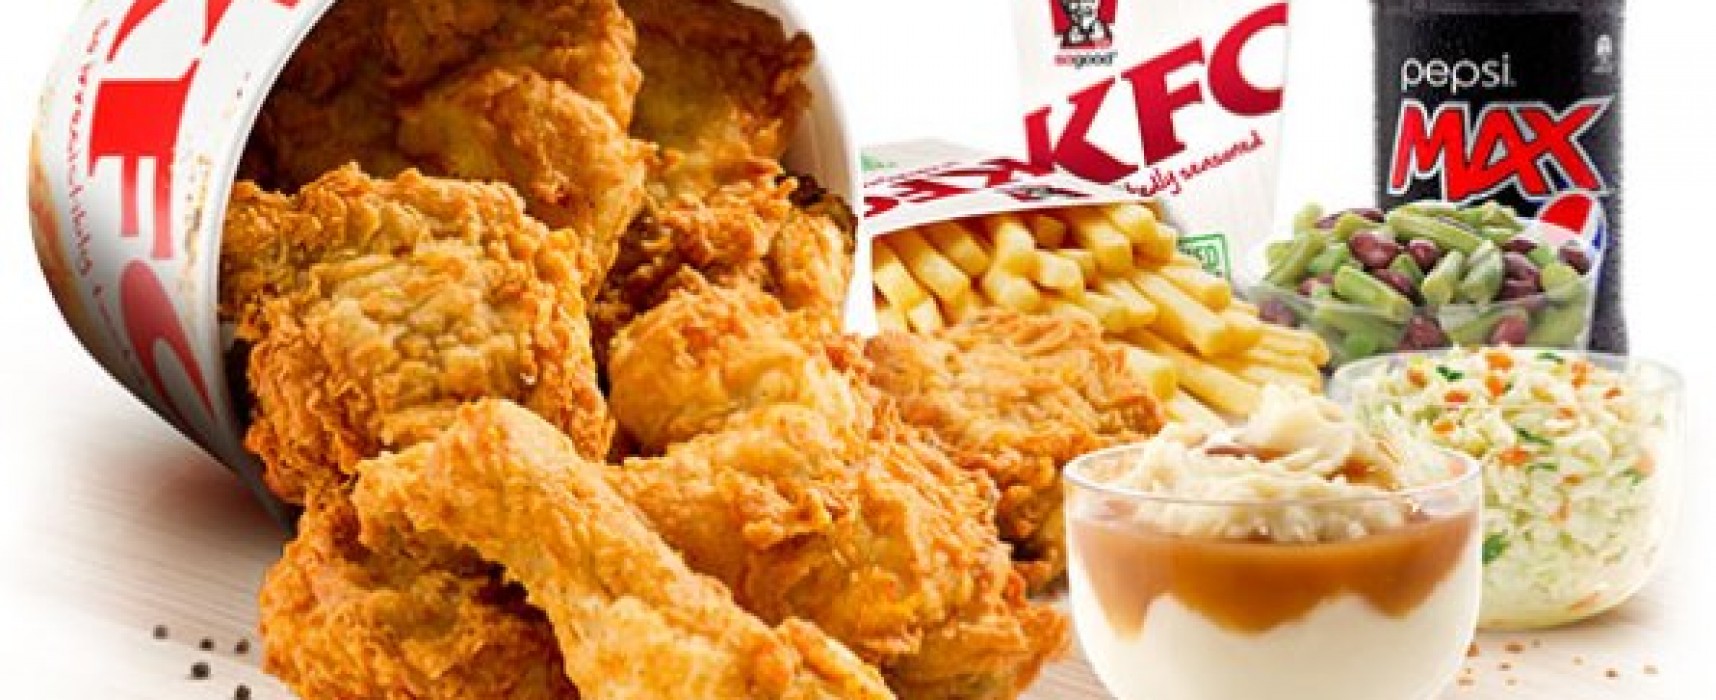 Kentucky Fried Chicken: finger lickin’ good